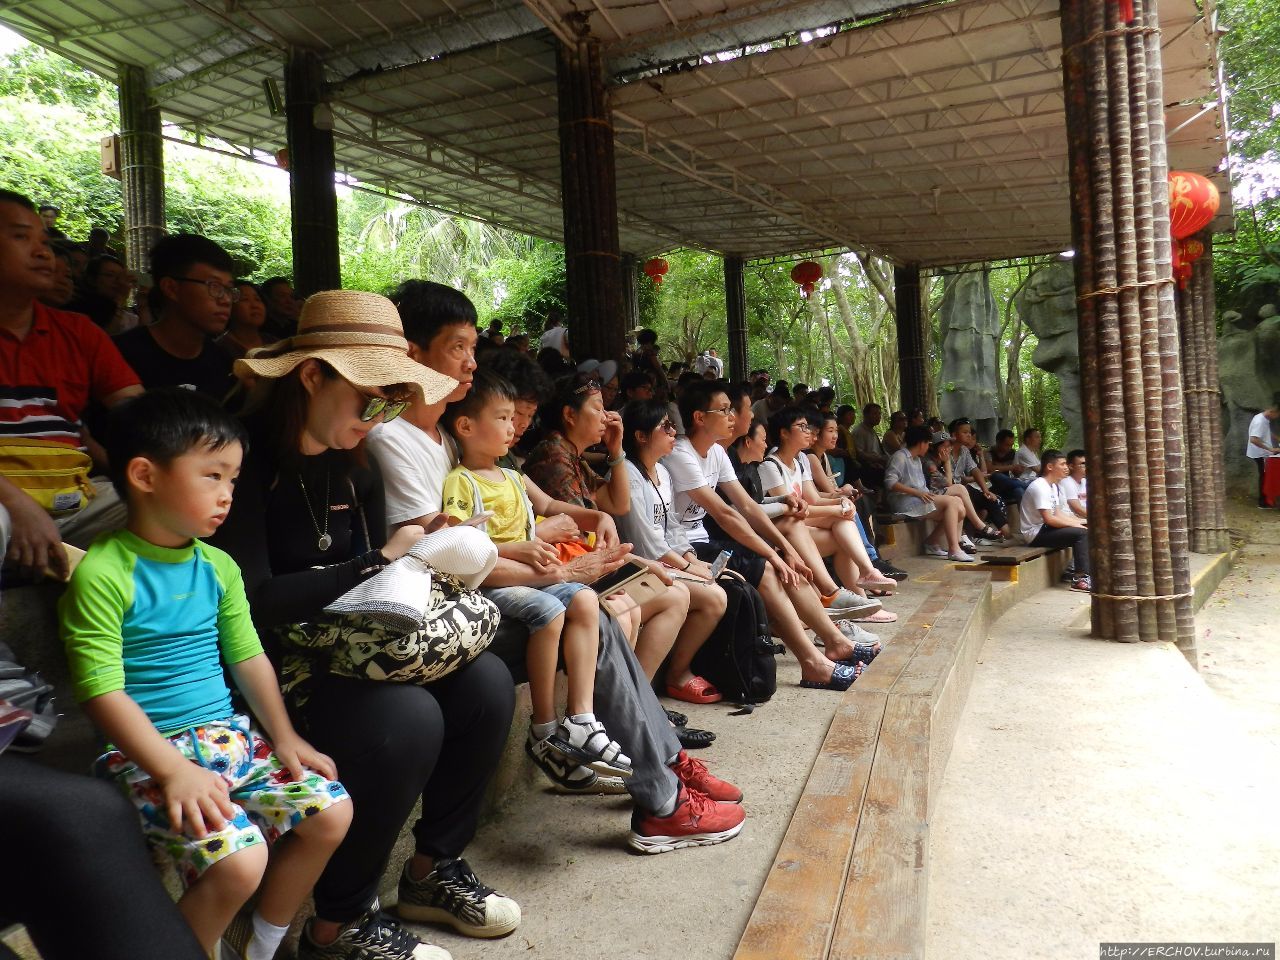 Экскурсия на Остров Обезьян  (南湾猴岛 – Nanwanhoudao) Остров обезьян Наньвань, Китай